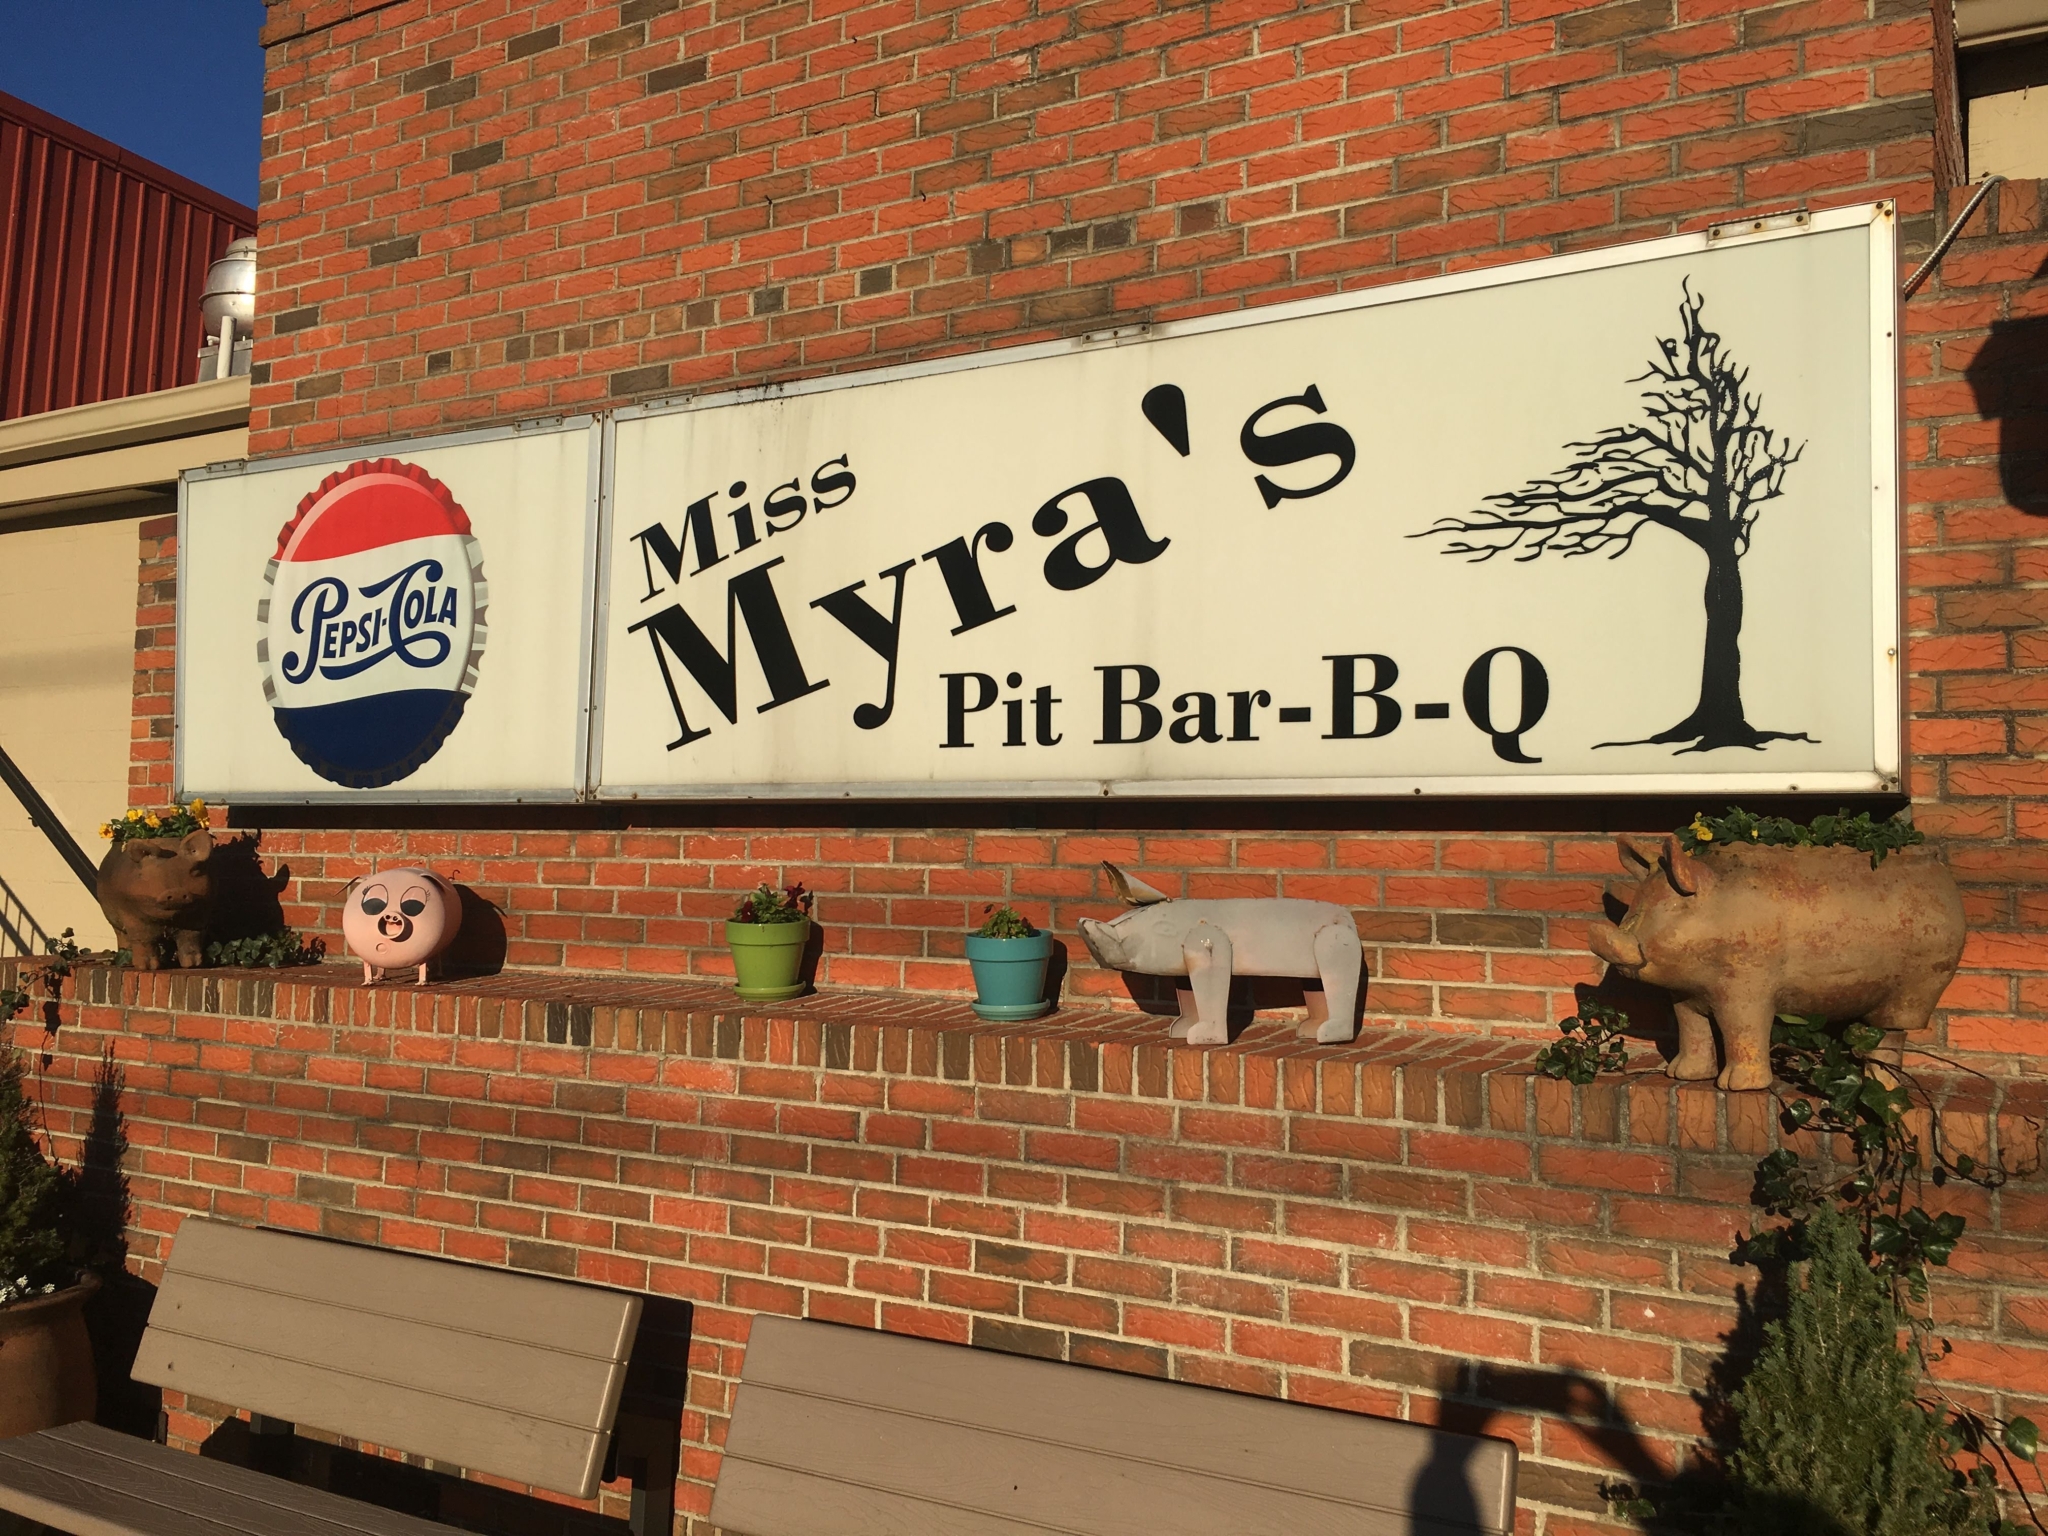 Miss Myra's Pit Bar-B-Q